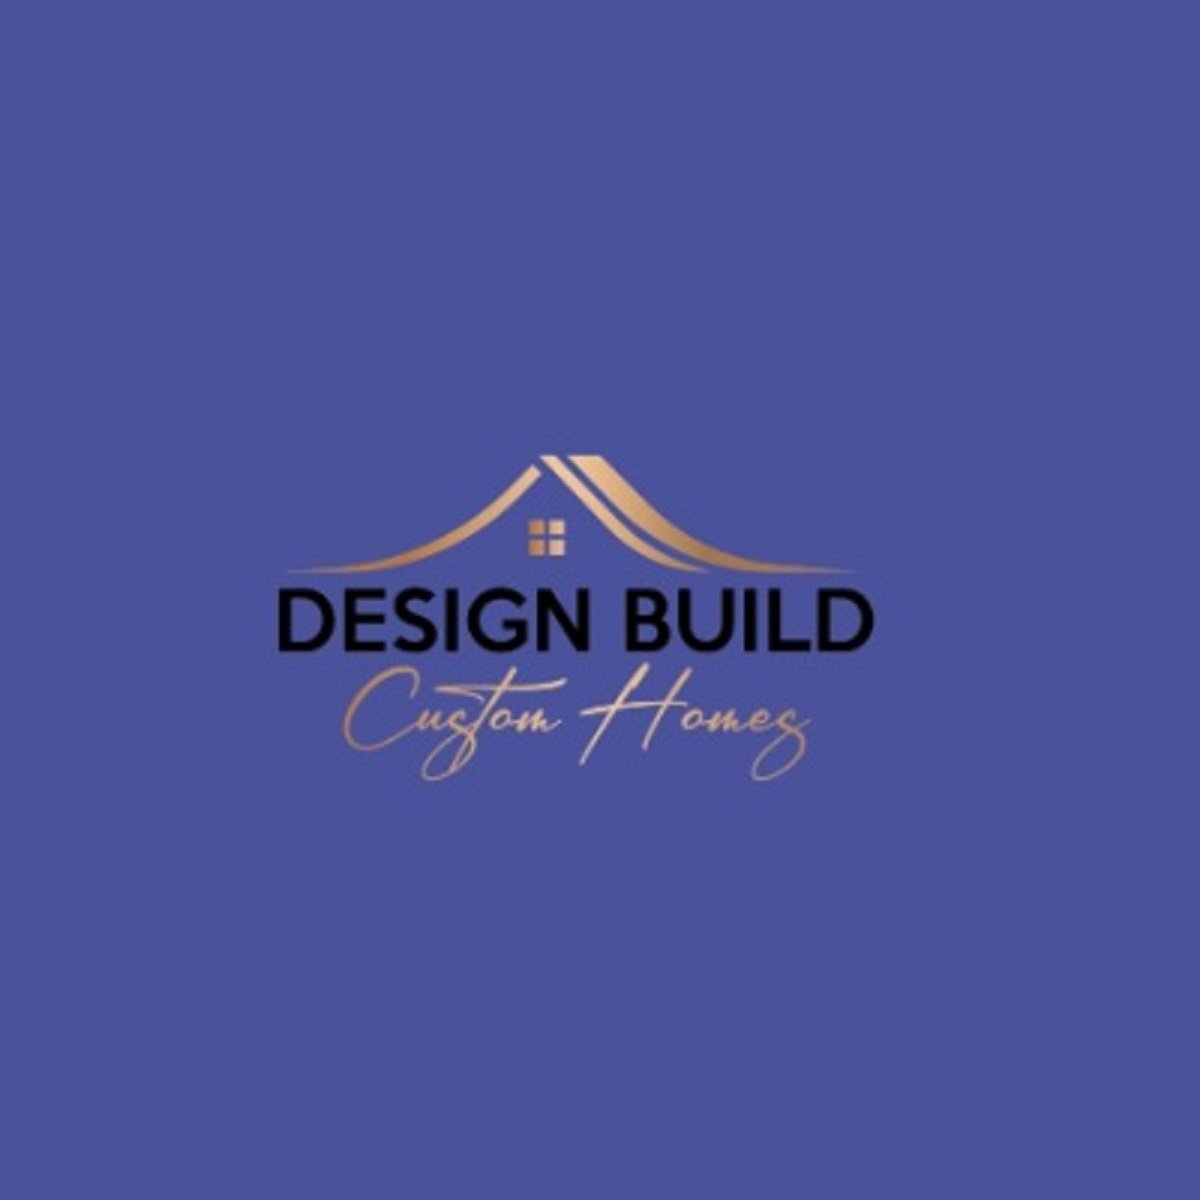 Design Build Custom Homes cover